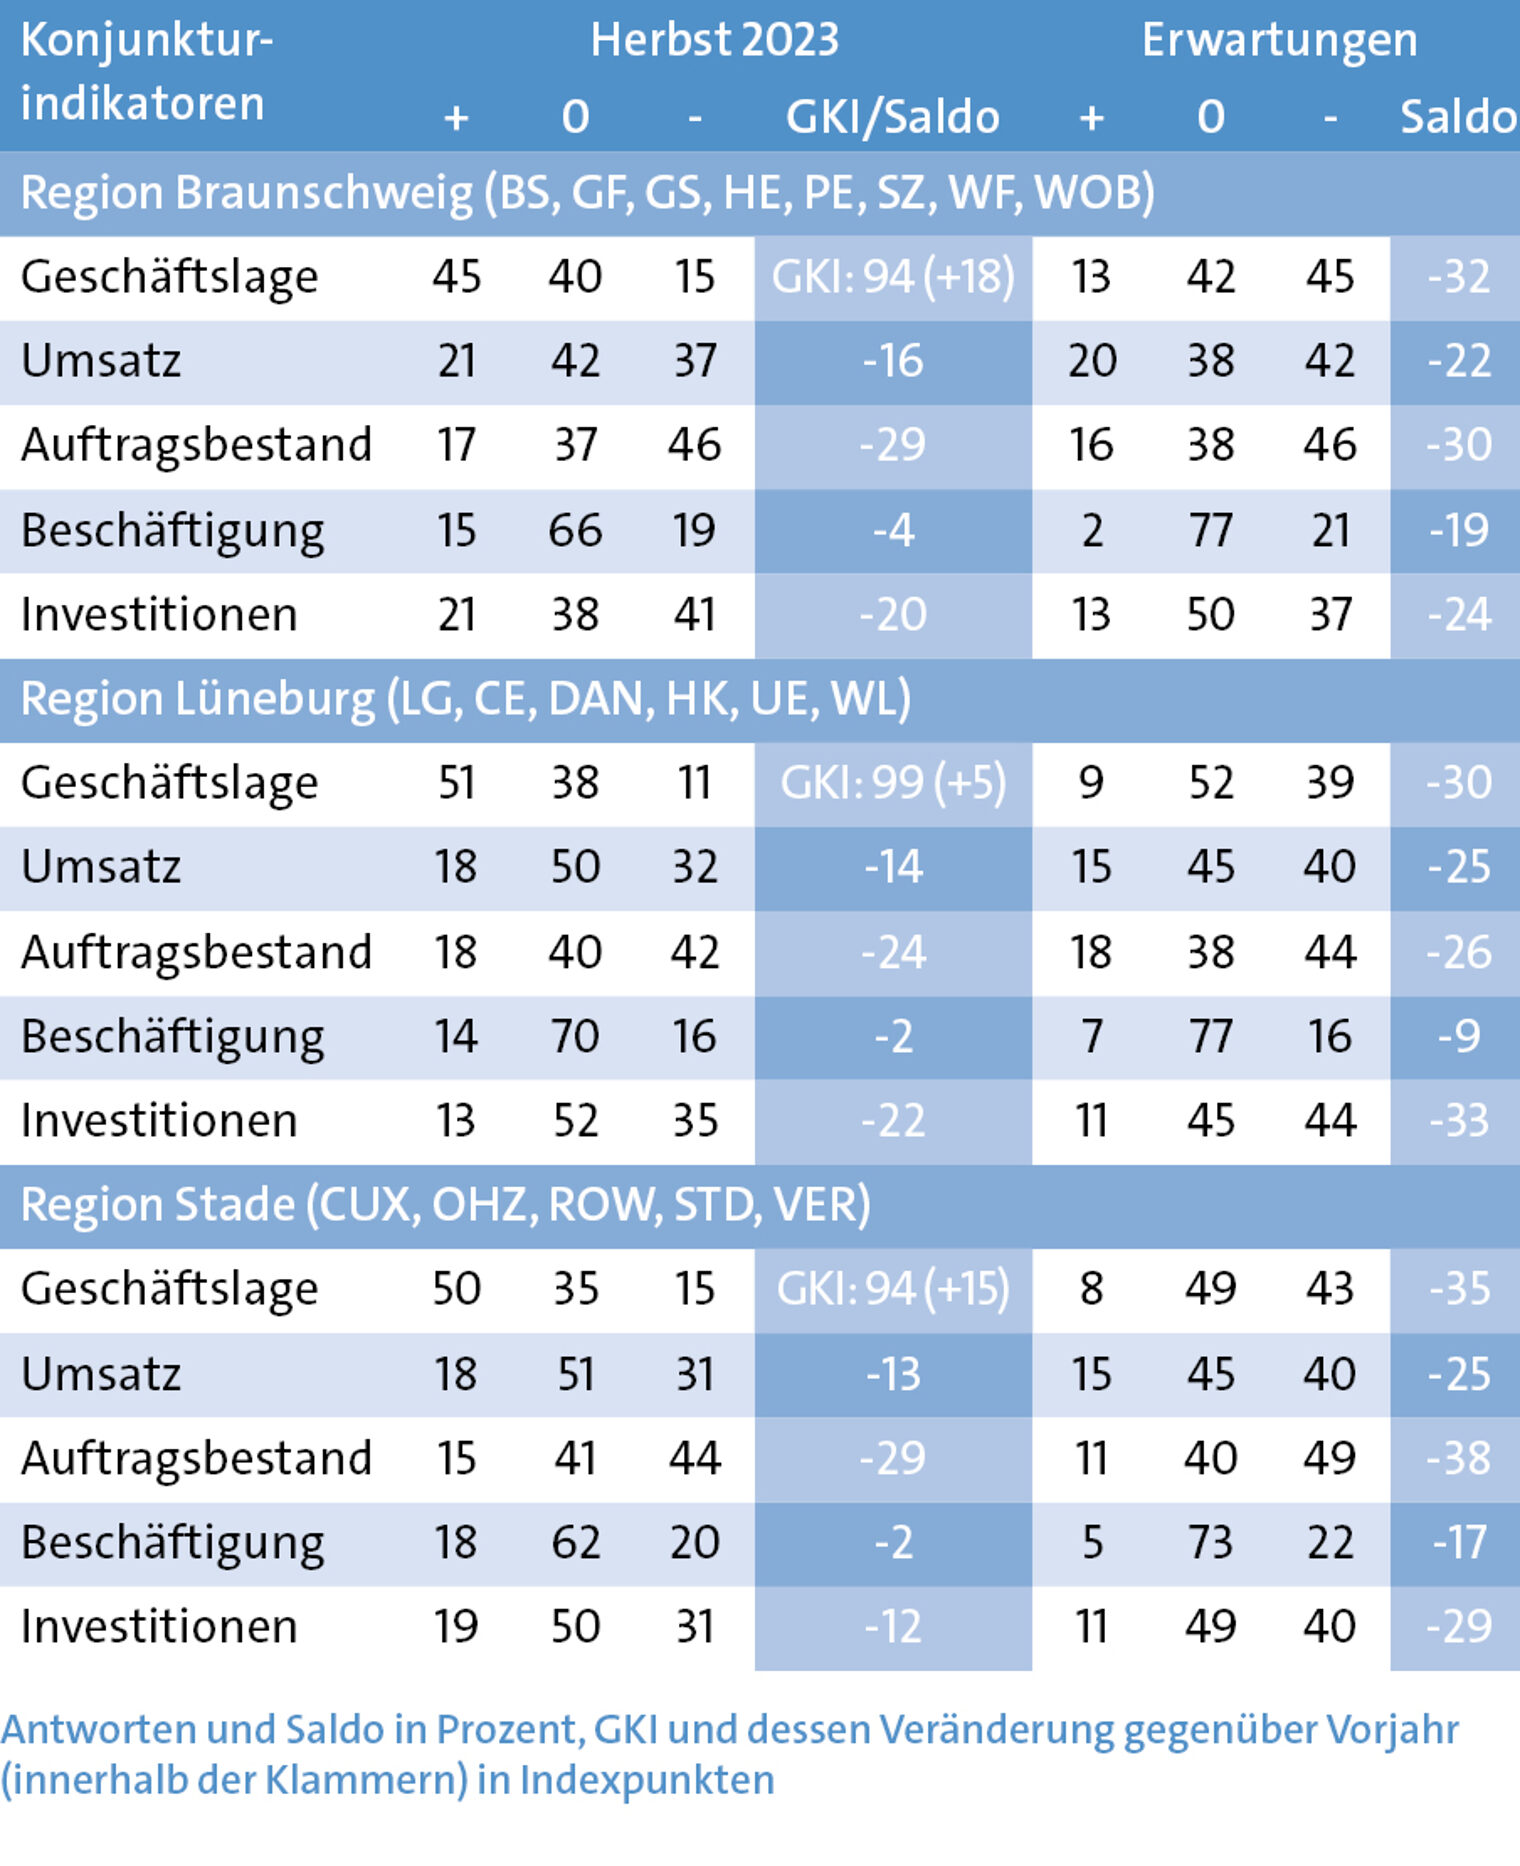 Konjunkturindikatoren in den Regionen Braunschweig, Lüneburg und Stade